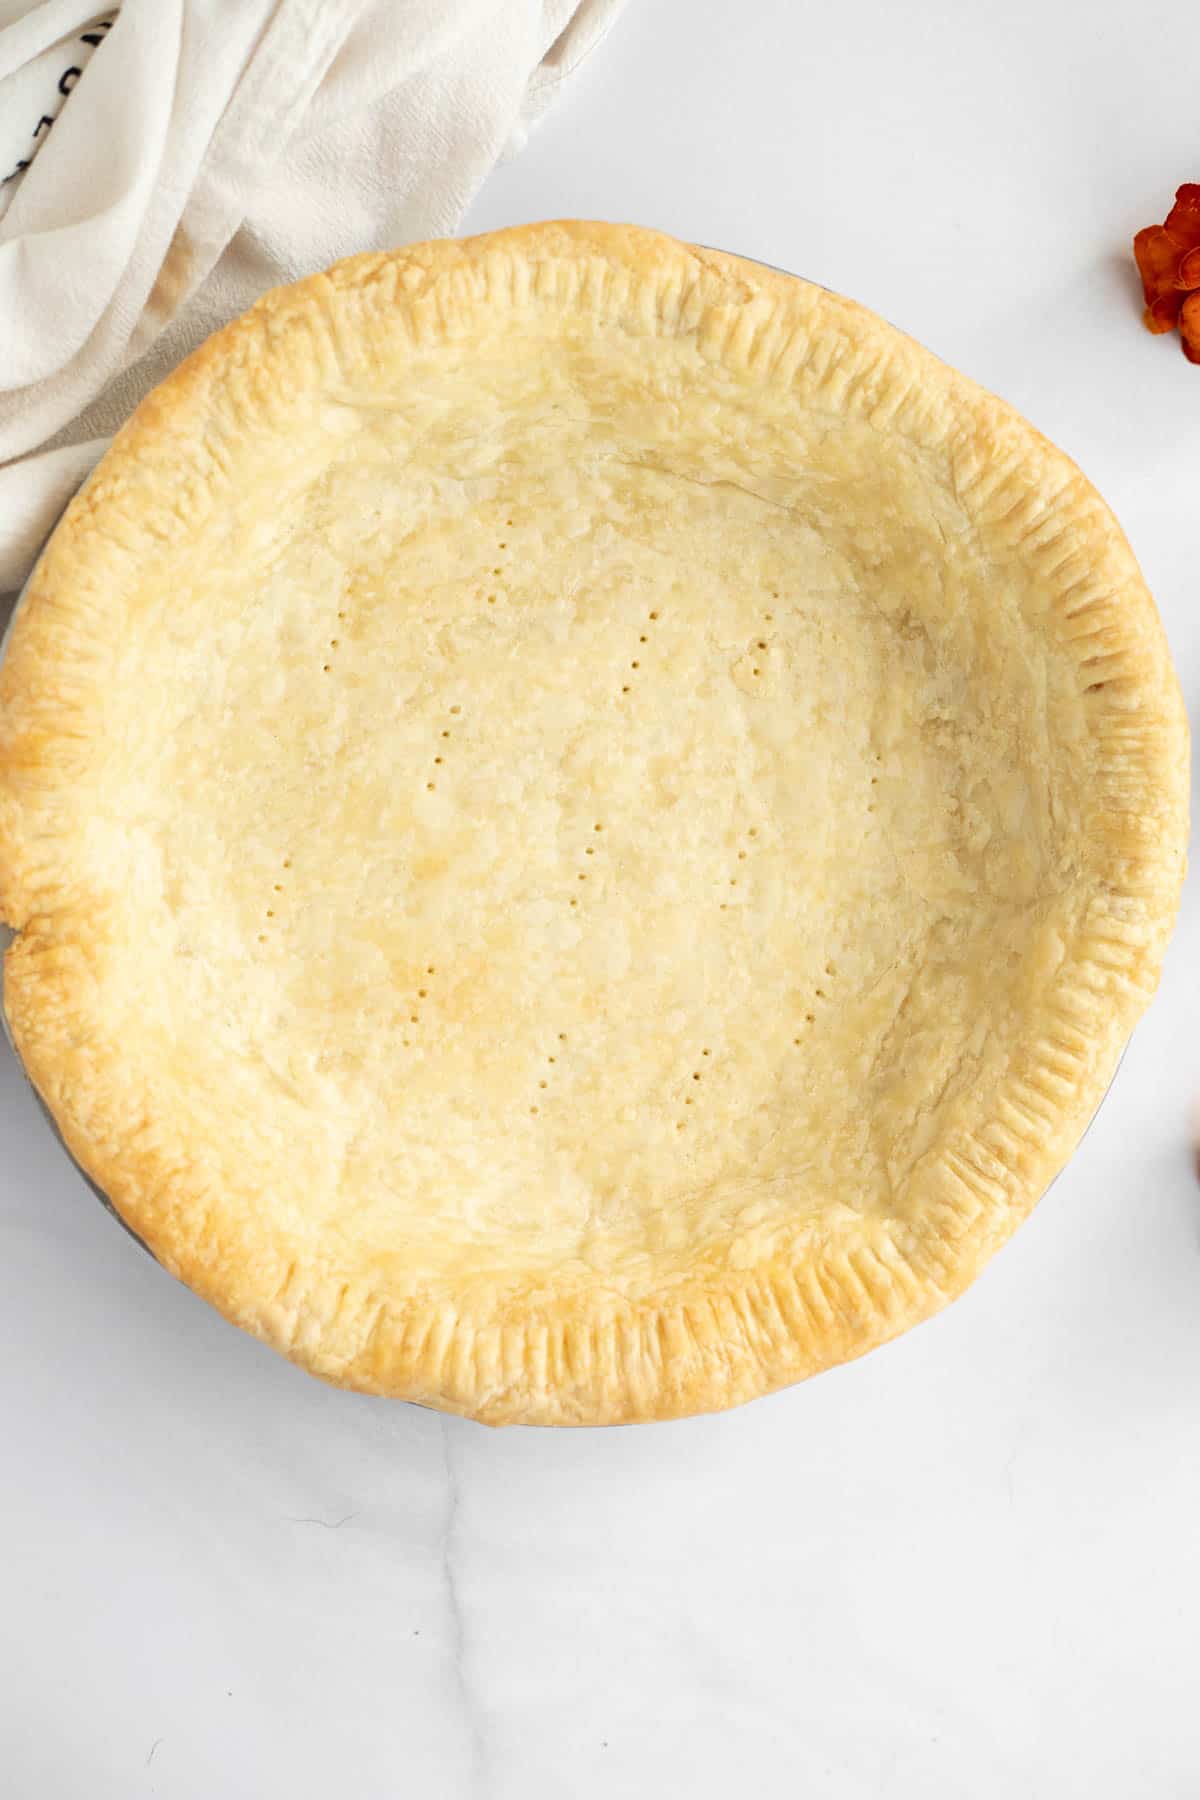 3 ingredient pie crust baked in a metal pie plate.